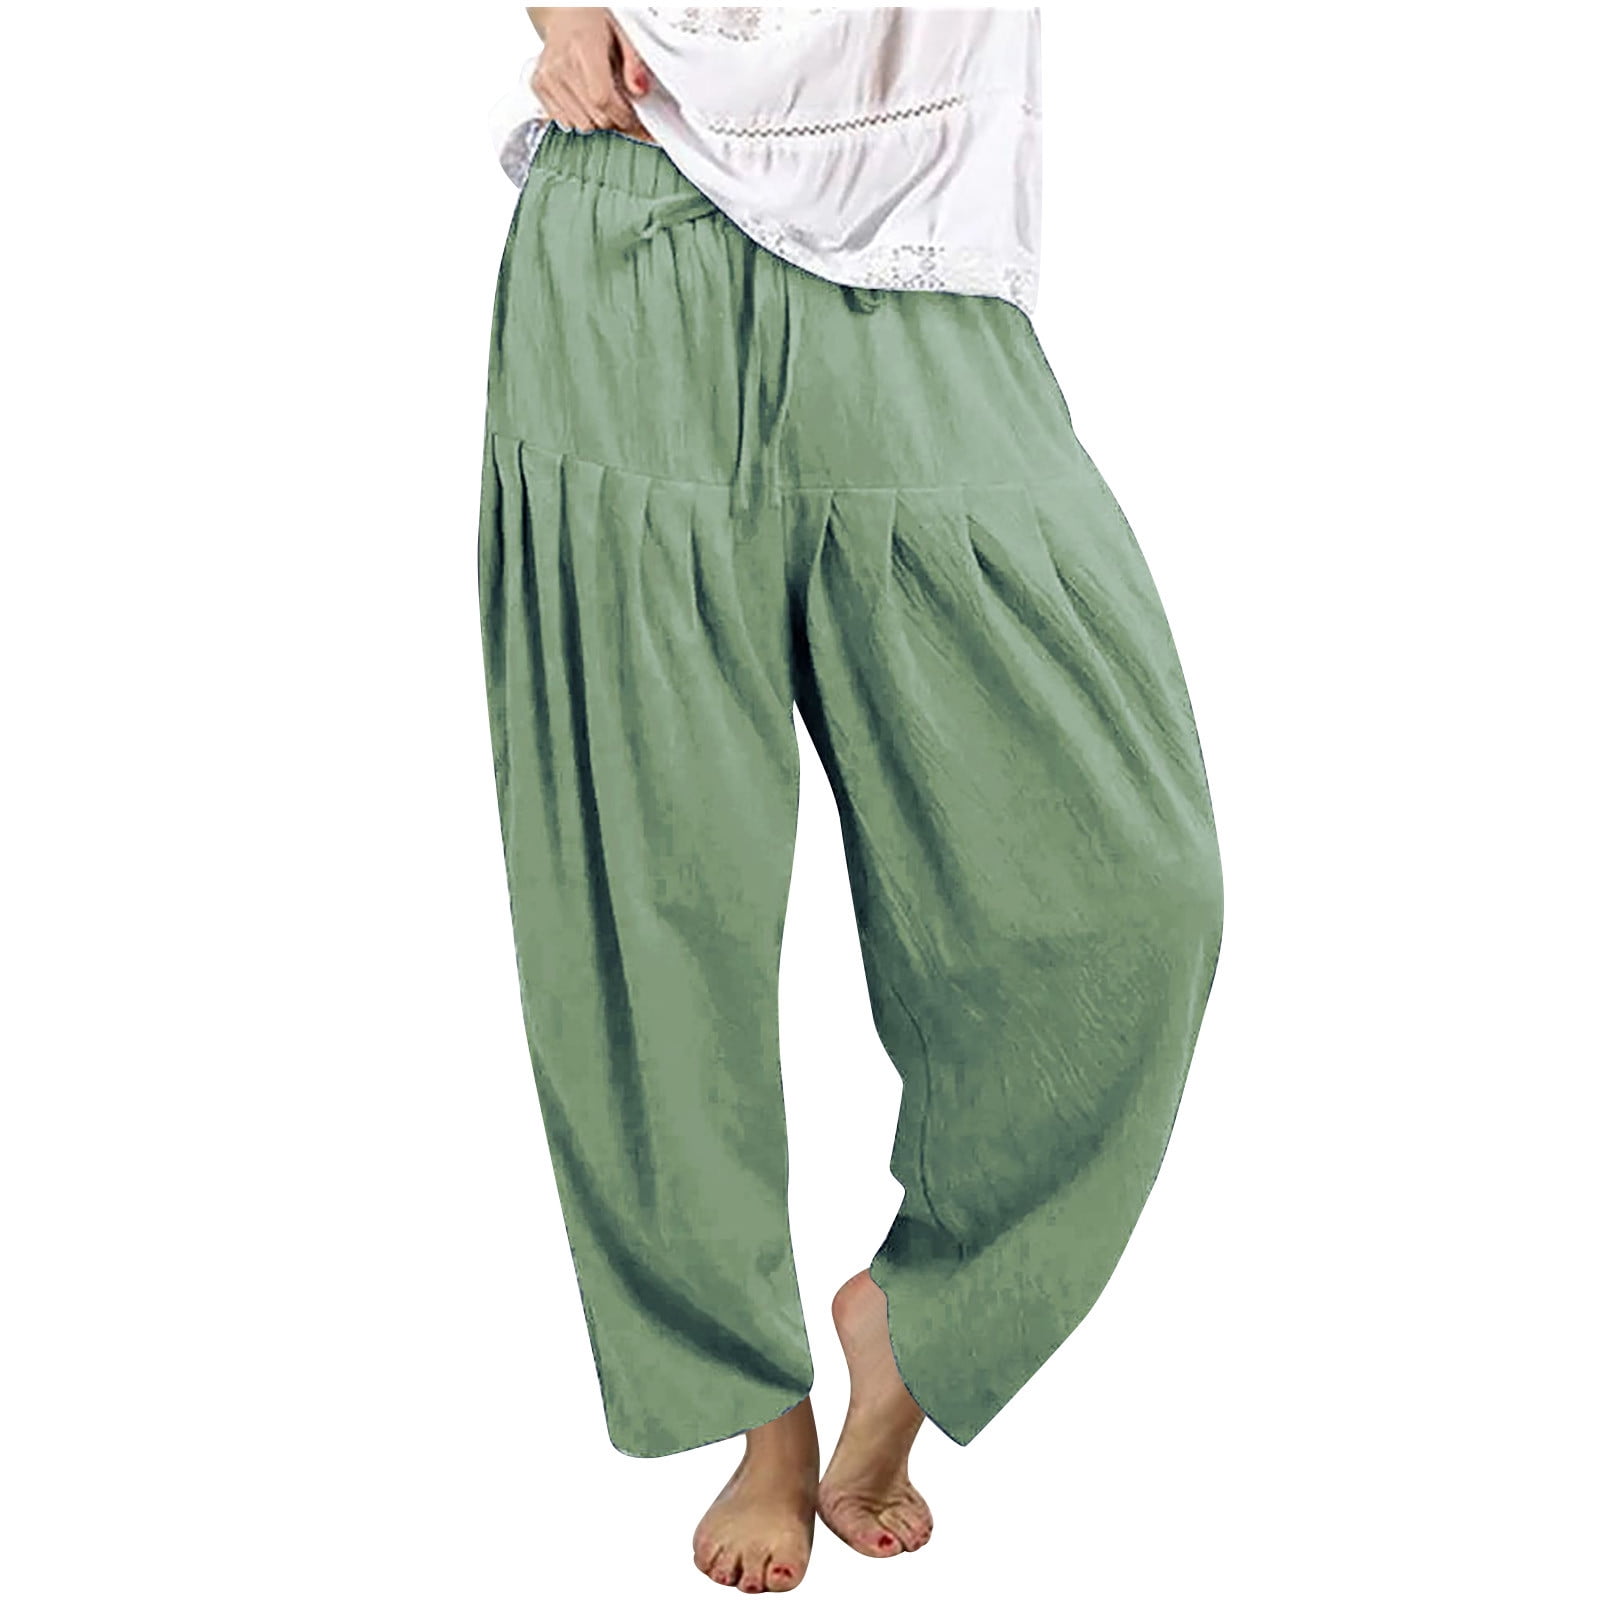 Eco Cotton Stretch Denim Crop Pants | Capri Pants | Pants